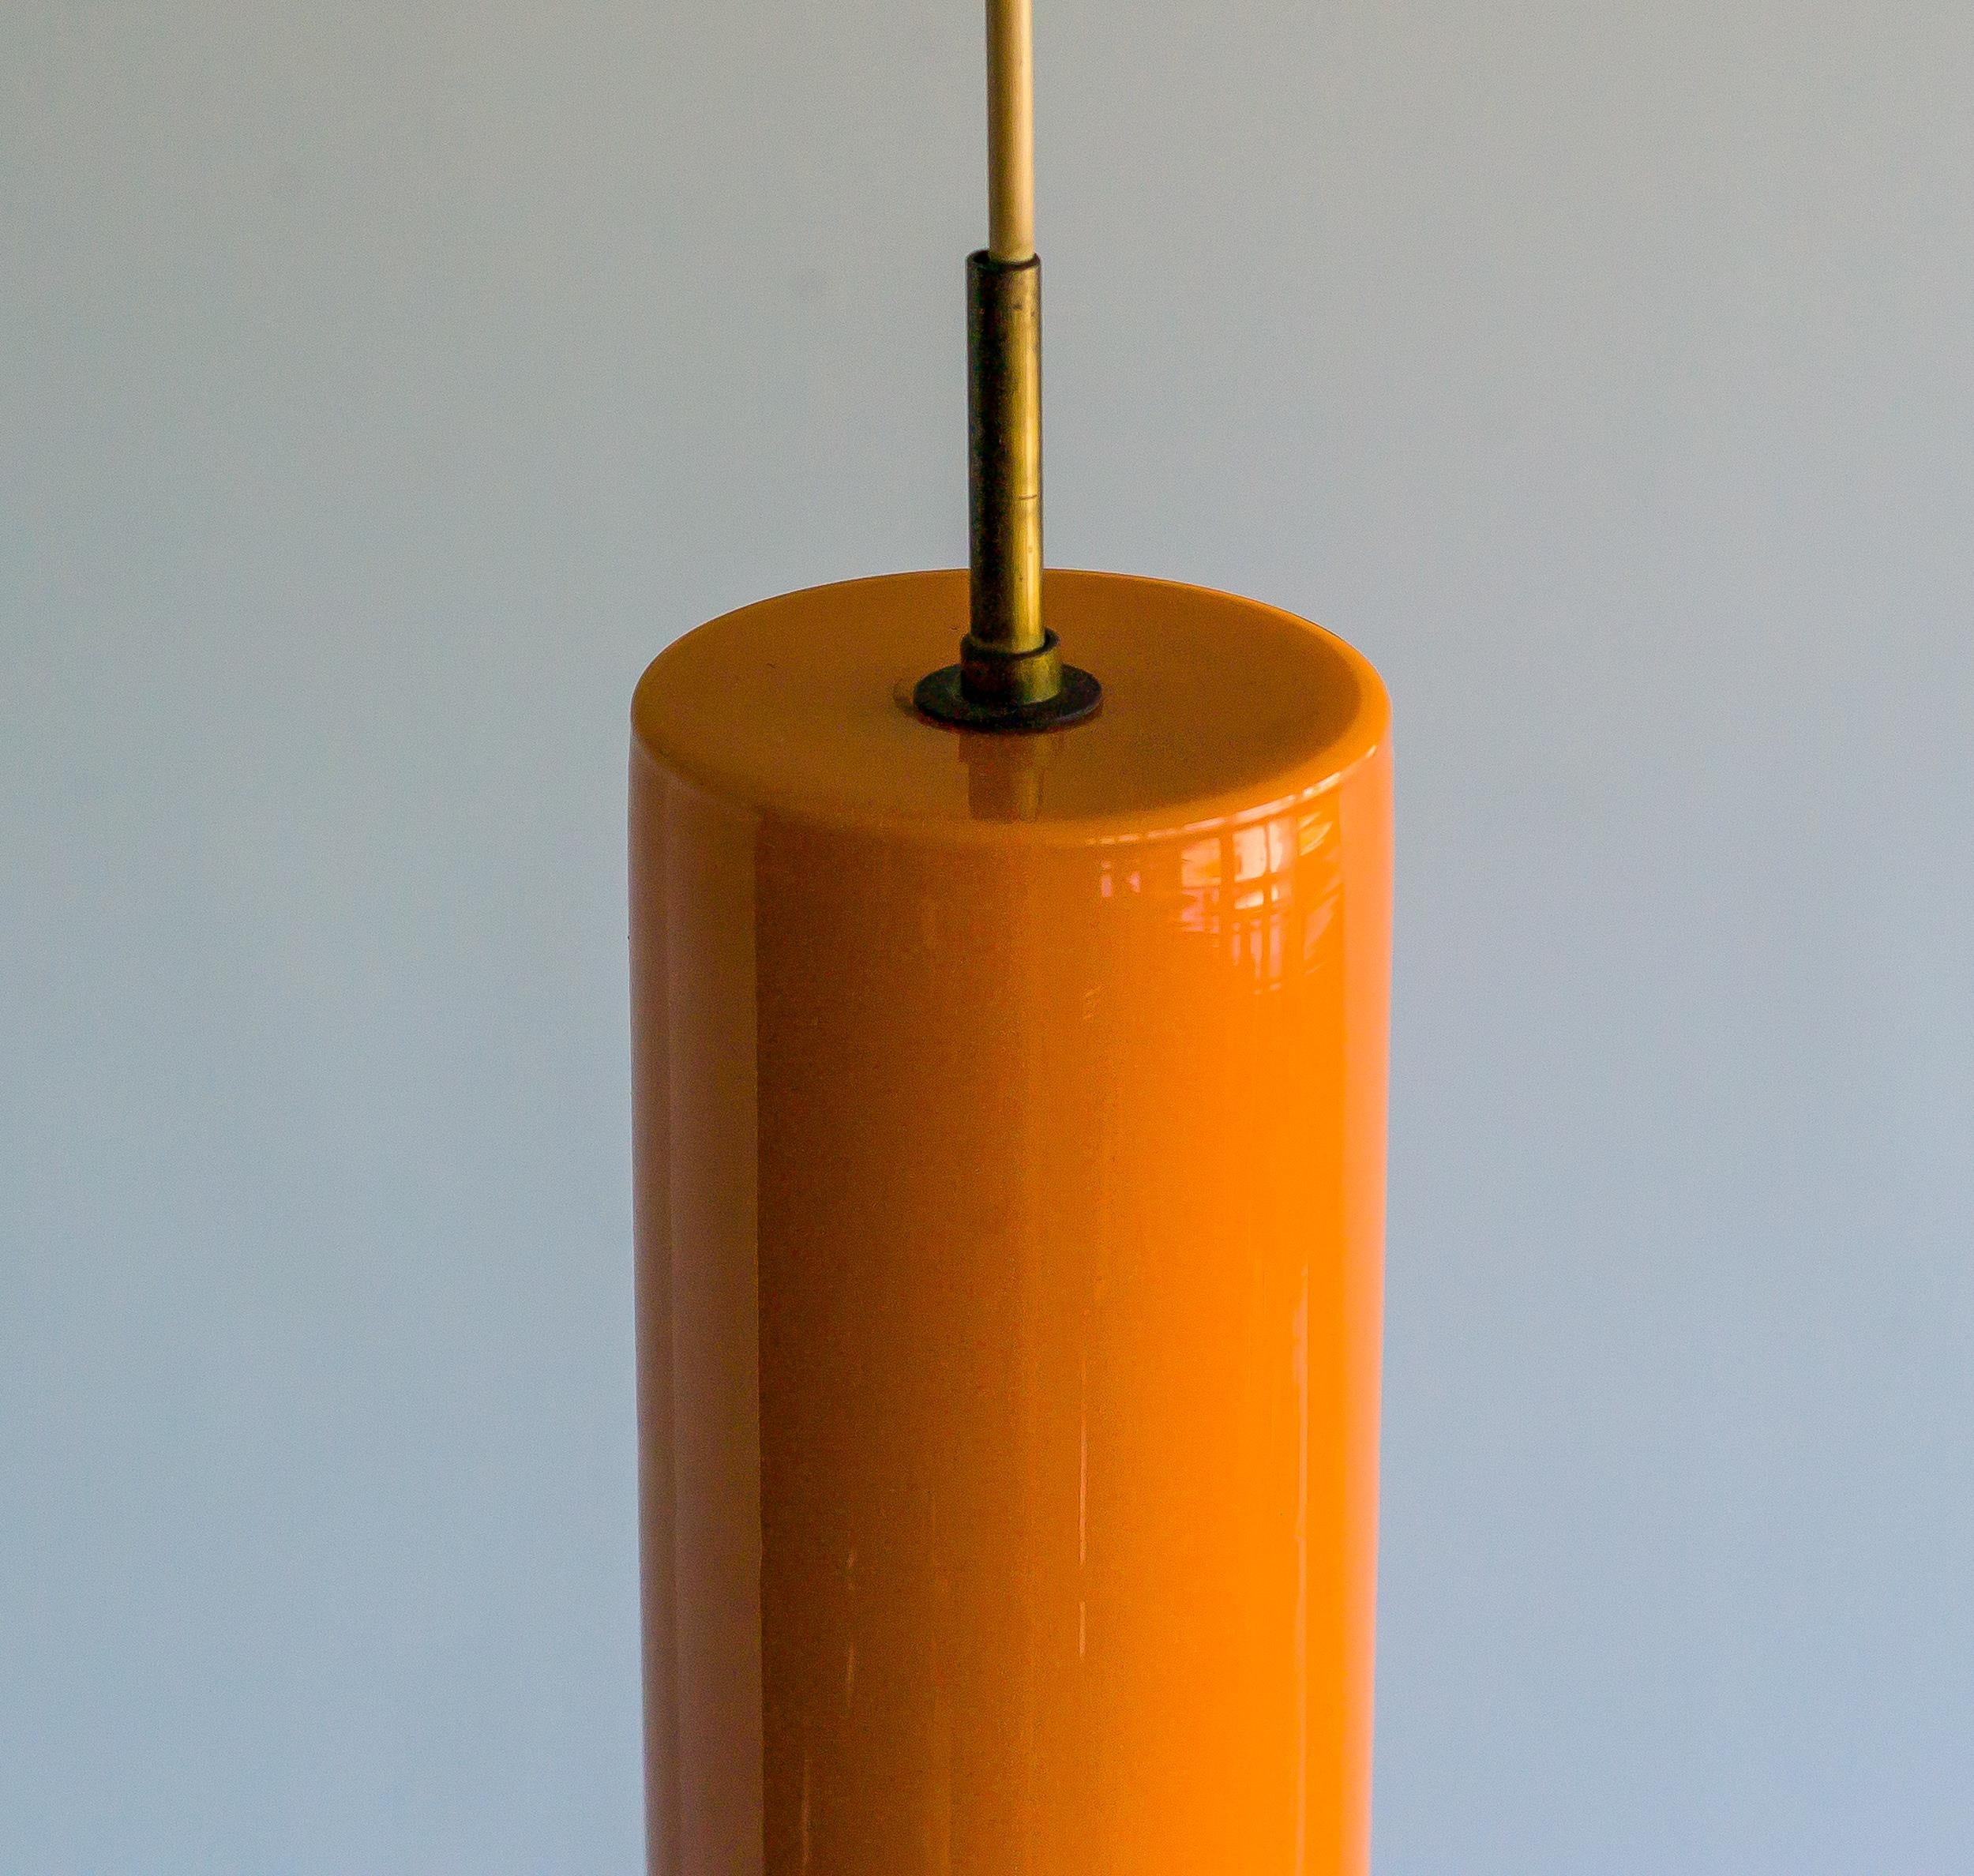 Pendentif en verre de Murano italien soufflé à la main n° 011.11, conçu par Massimo Vignelli et exécuté par le spécialiste du verre de Murano Venini. Exemplaire original avec quincaillerie en laiton, vers 1955.
Superbe couleur orange typique des